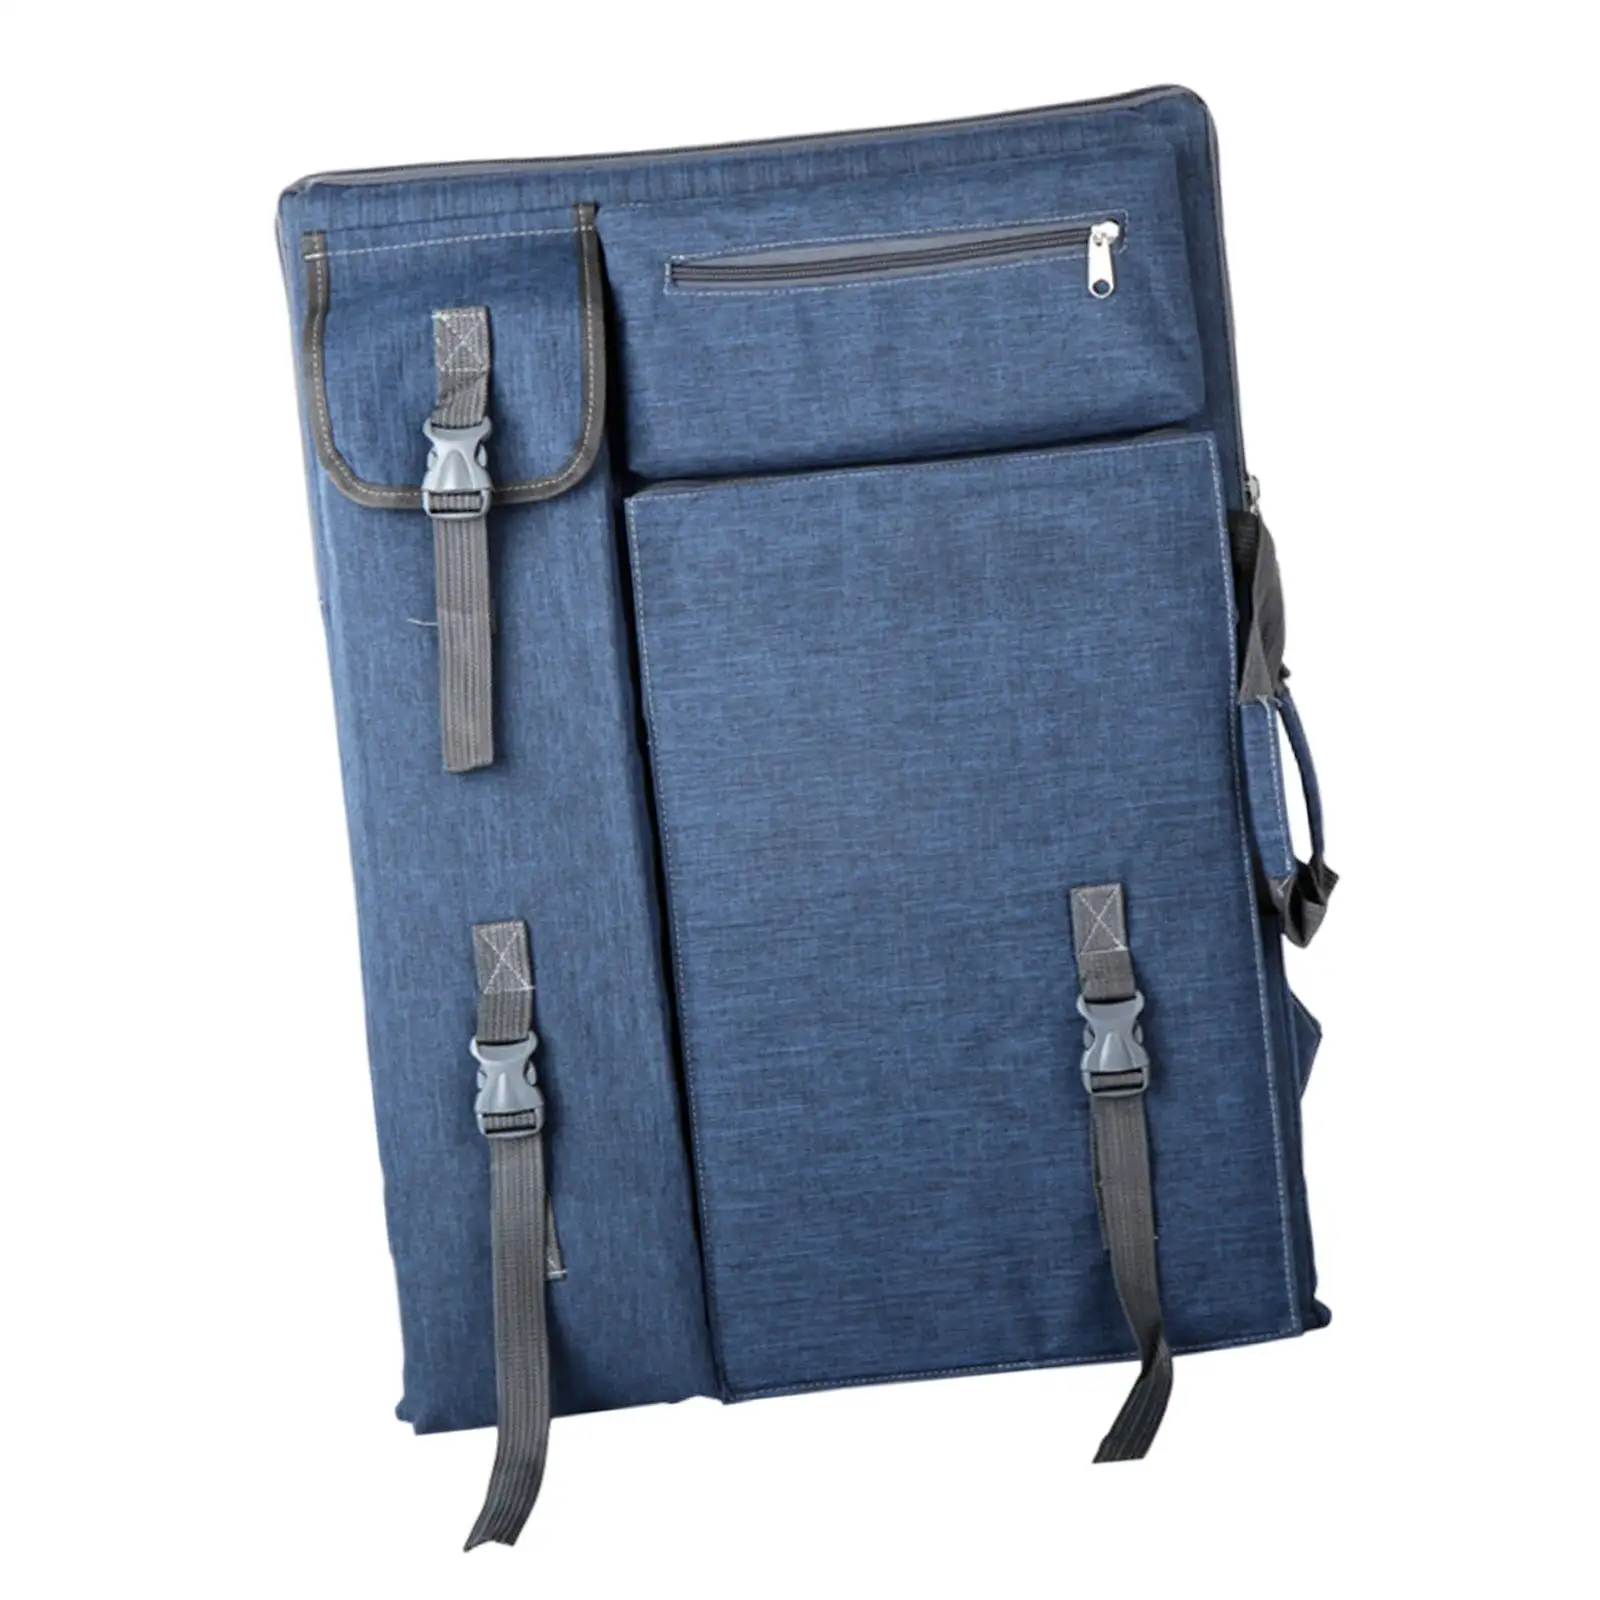 Art Portfolio Case Adjustable Shoulder Straps Paints Wear Resistant Backpack Tote Bag 4K Canvas Drawing Board Bag